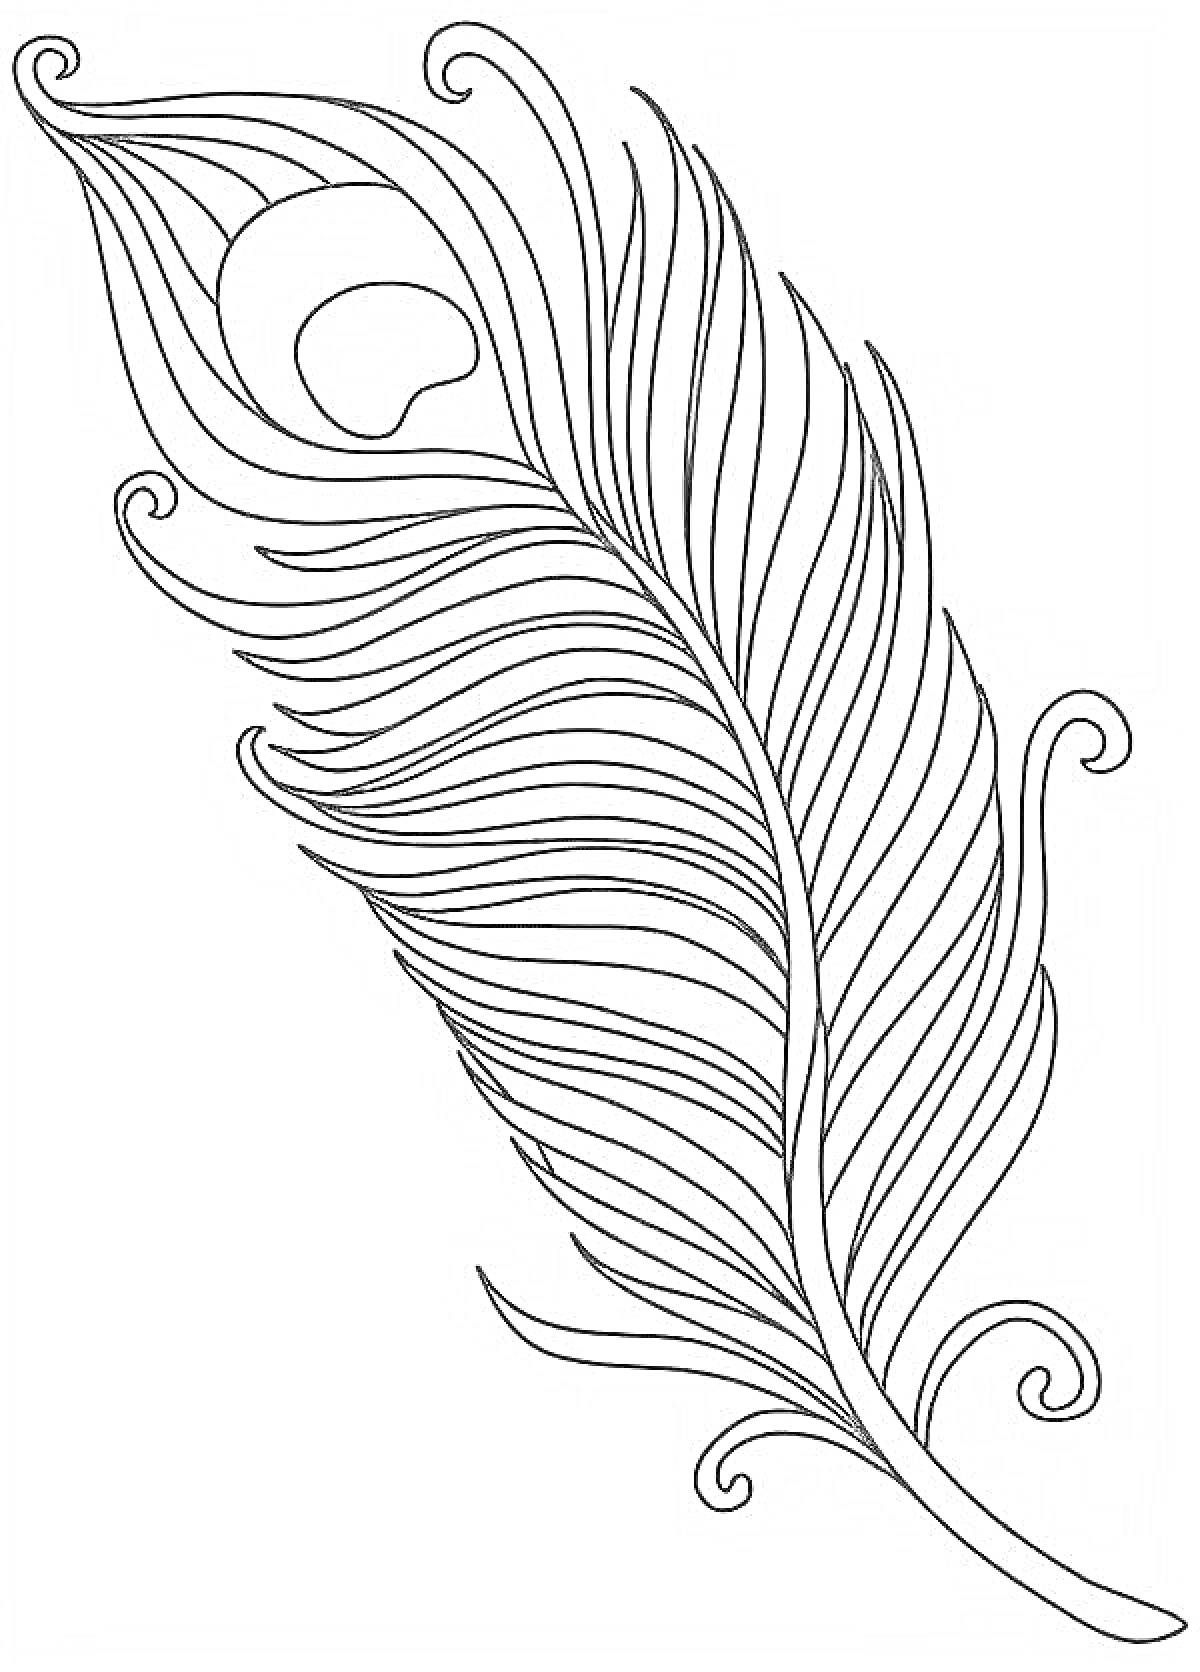 Раскраска Раскраска с изображением пера павлина с плавными линиями и узорами